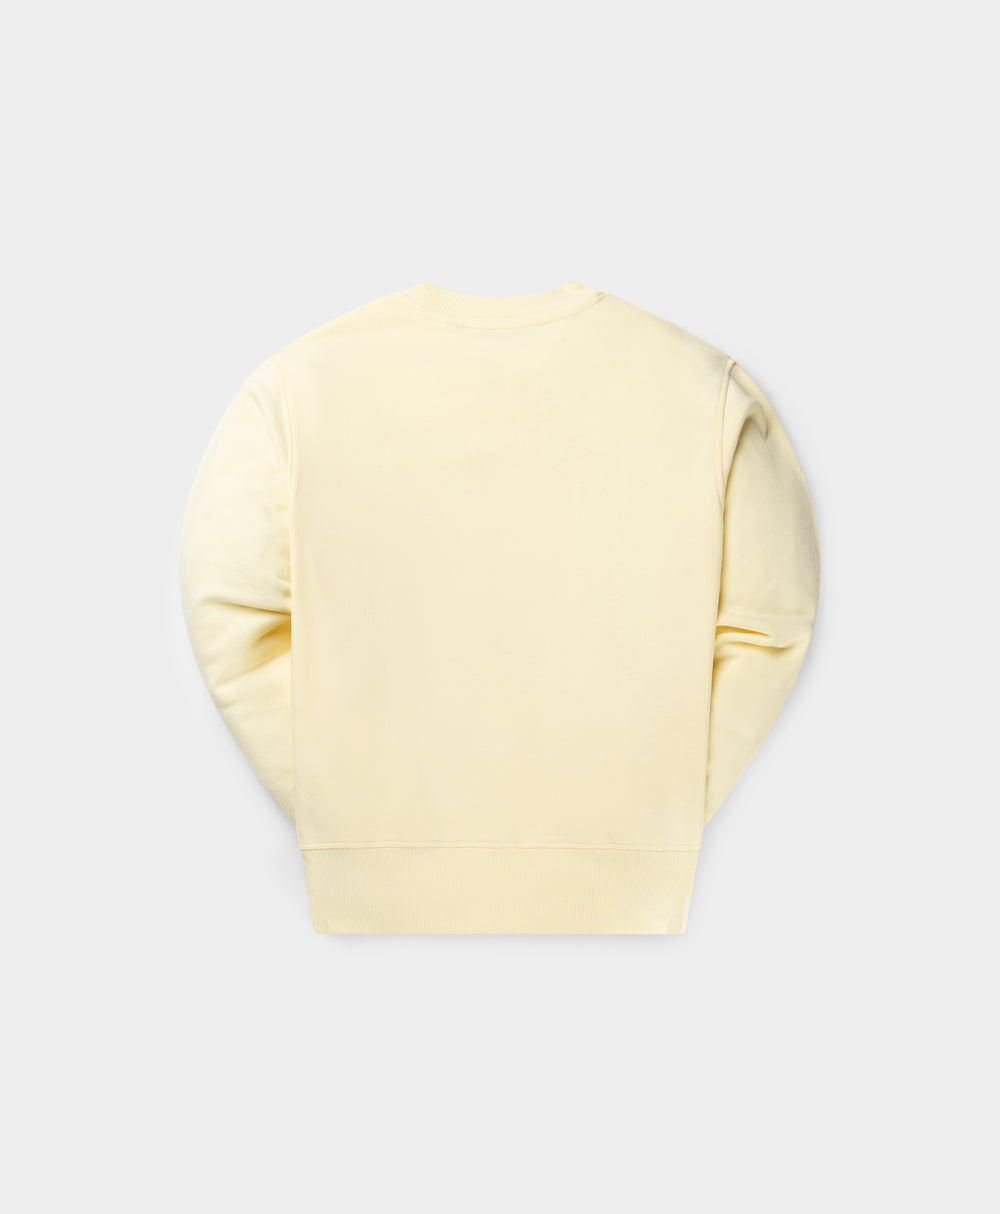 DP - Icing Yellow Circle Sweater - Packshot - Rear